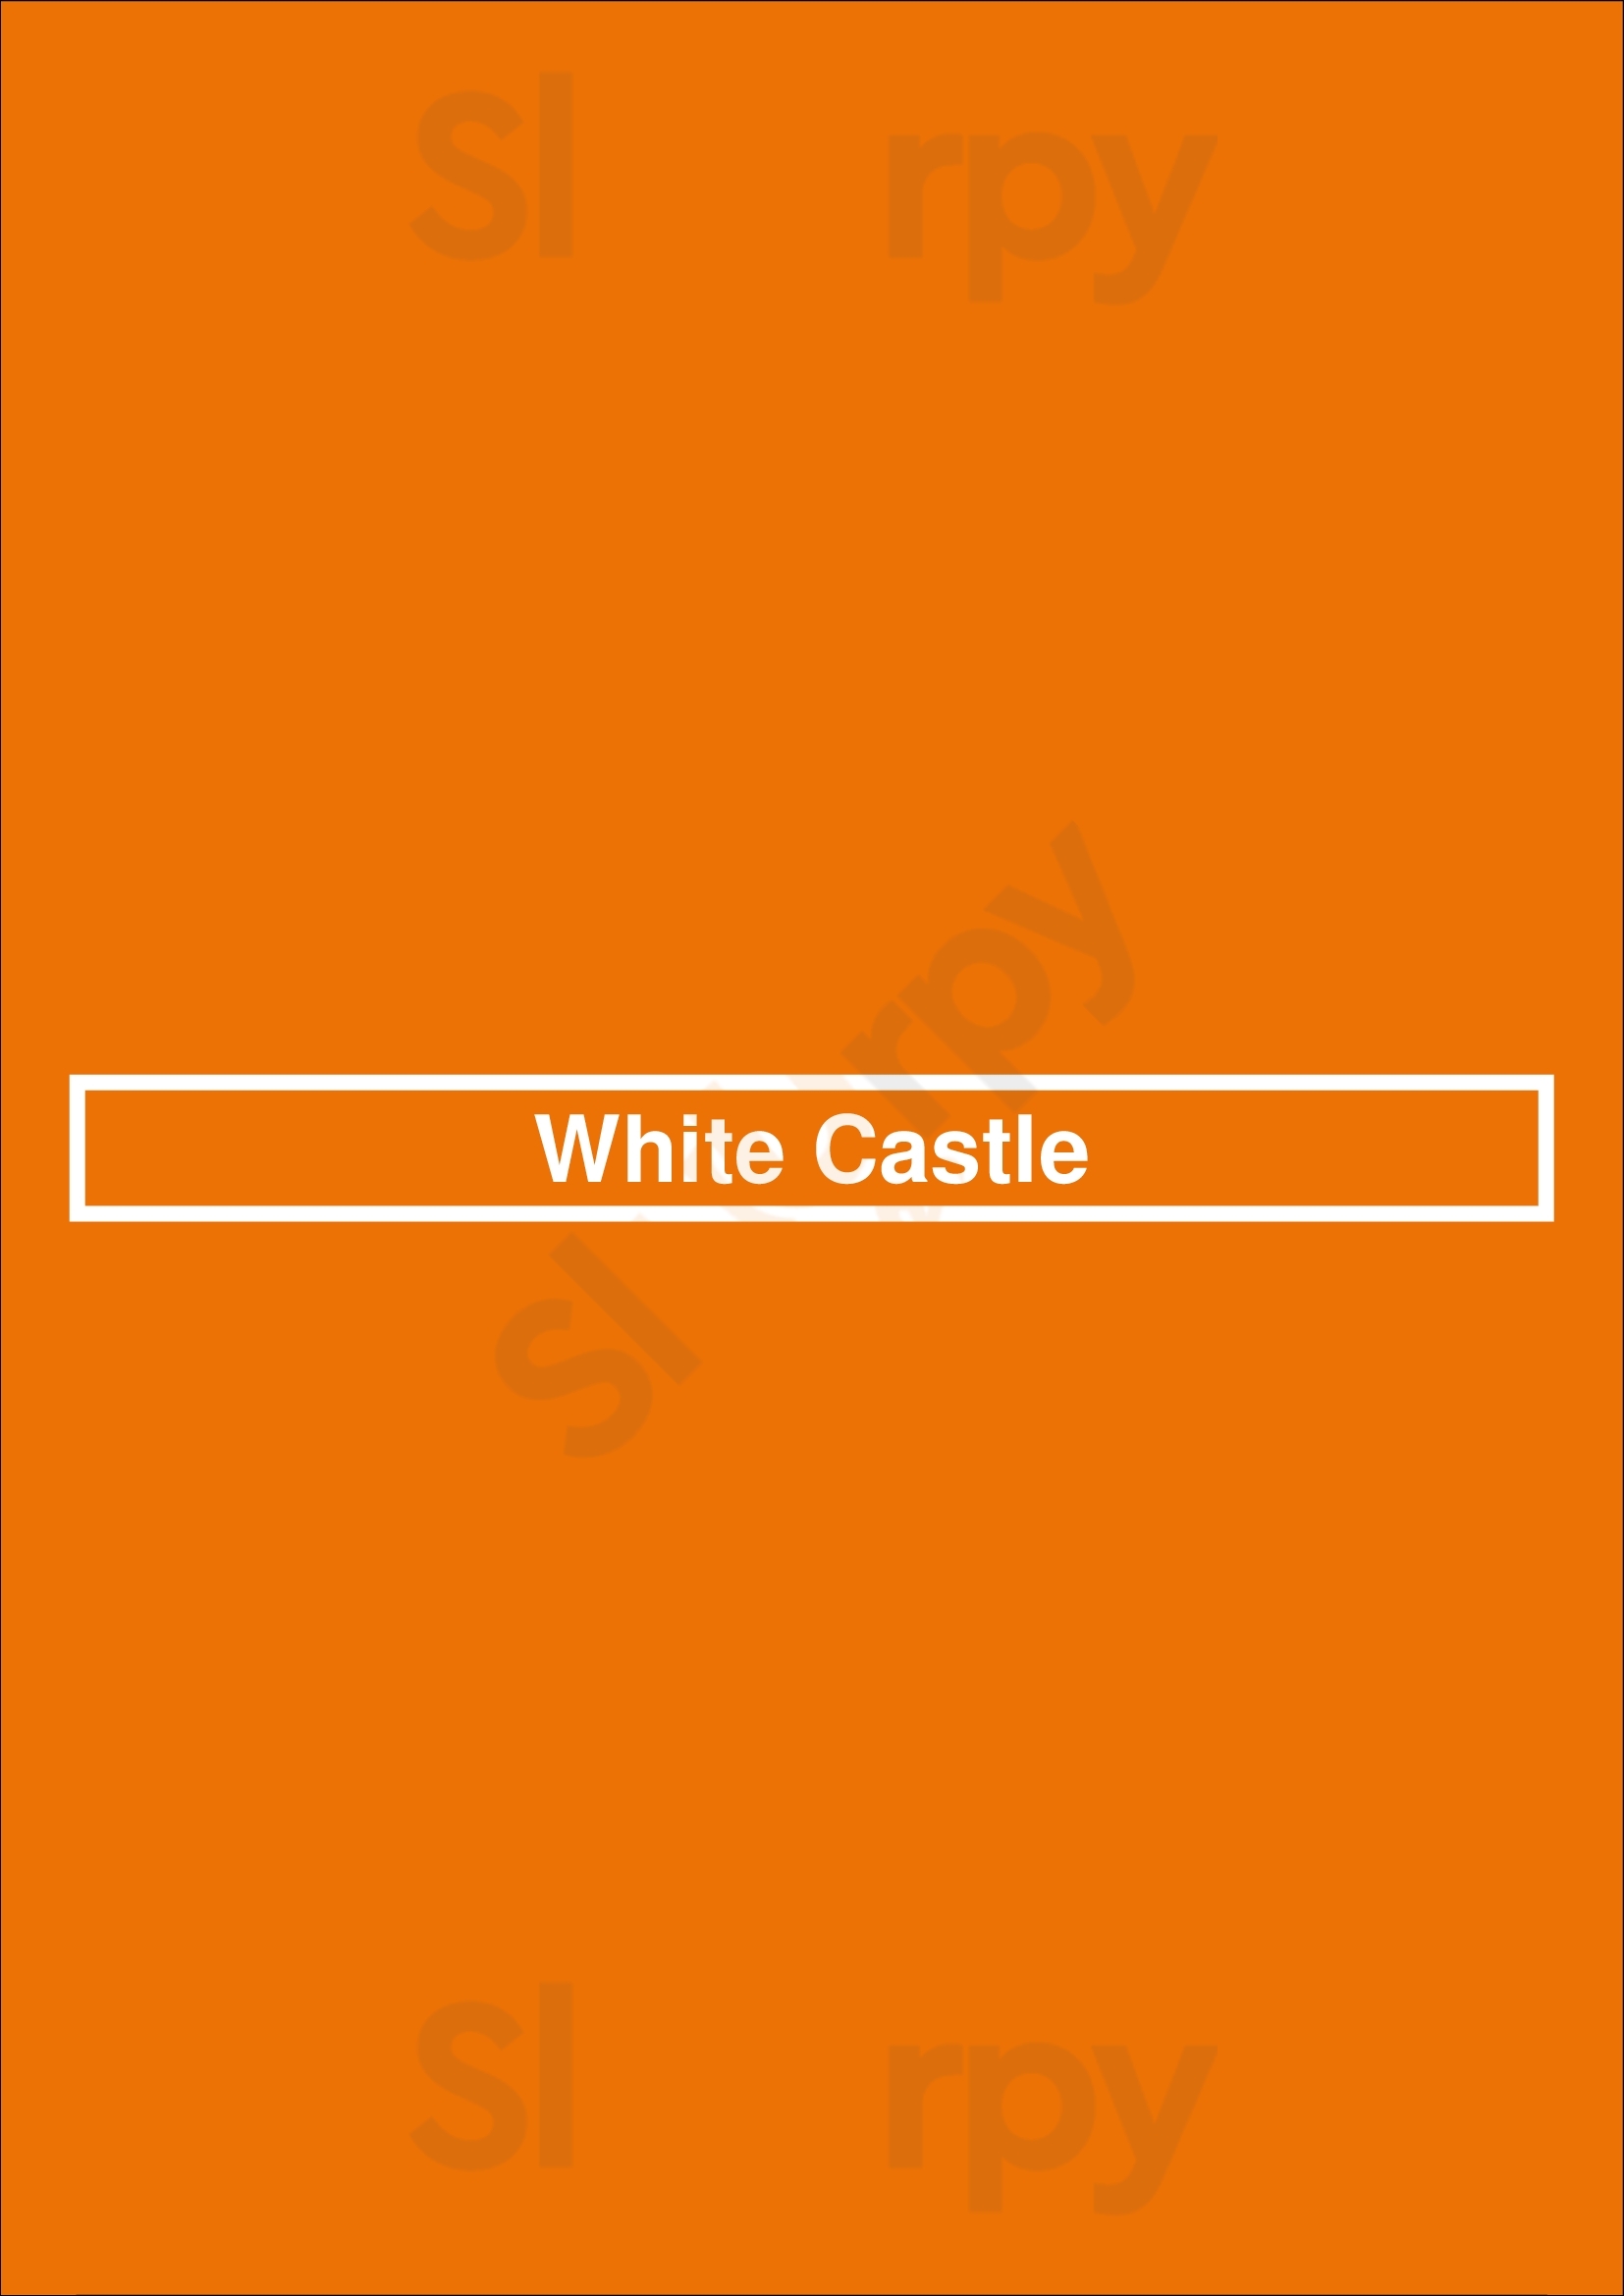 White Castle Chicago Menu - 1